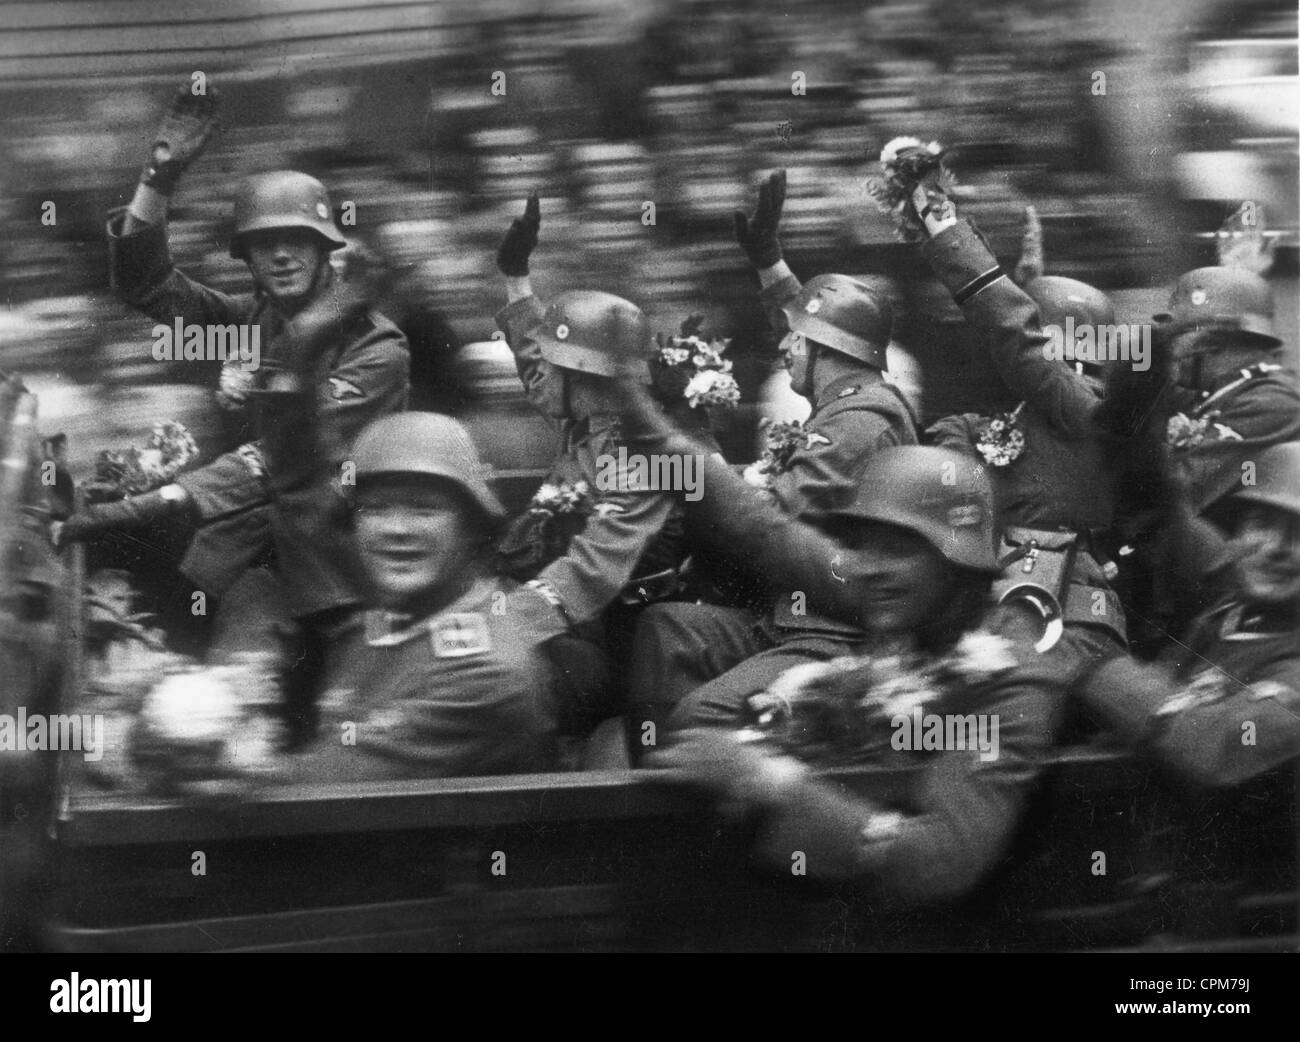 Besetzung des Sudetenlandes in der Tschechoslowakei, 1938 Stockfoto